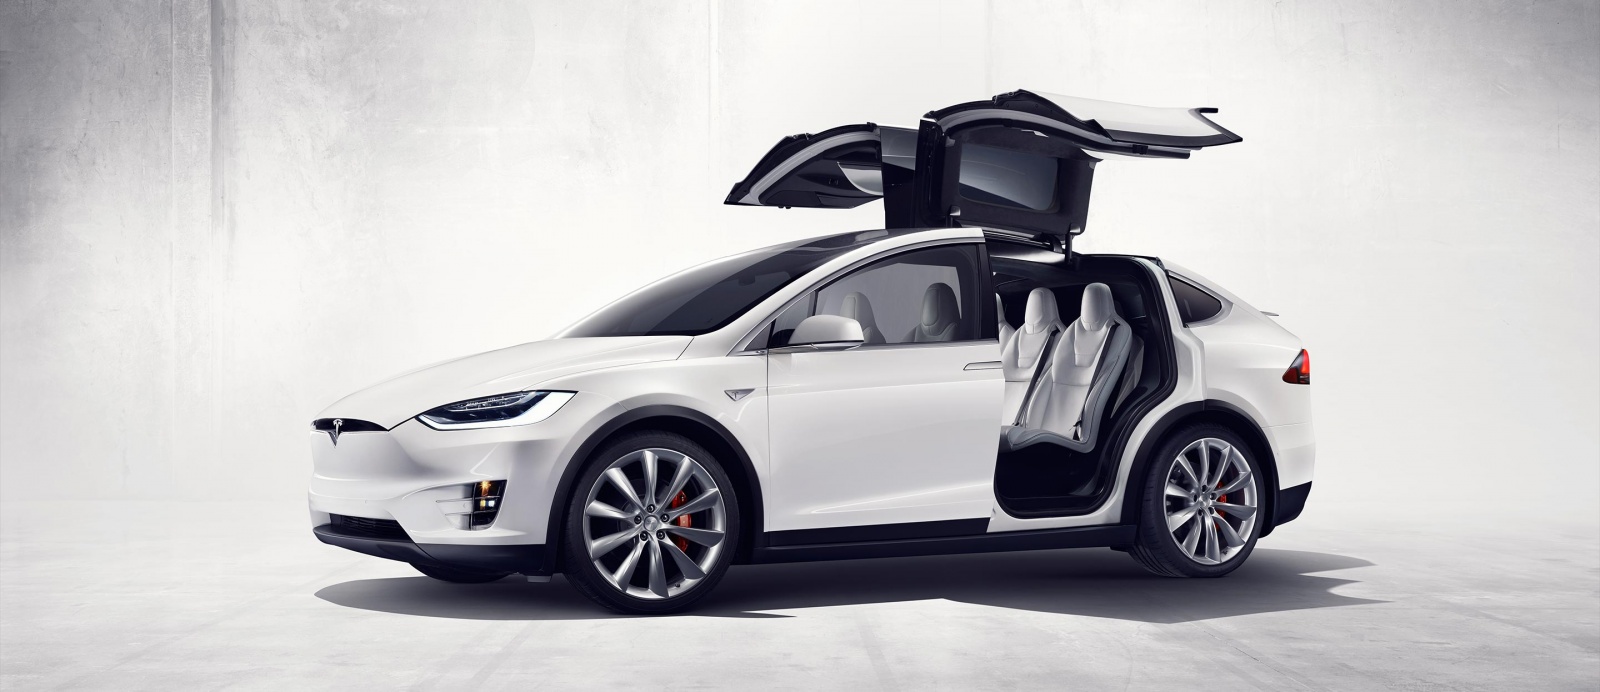 Илон Маск официально представил Tesla Model X - 1